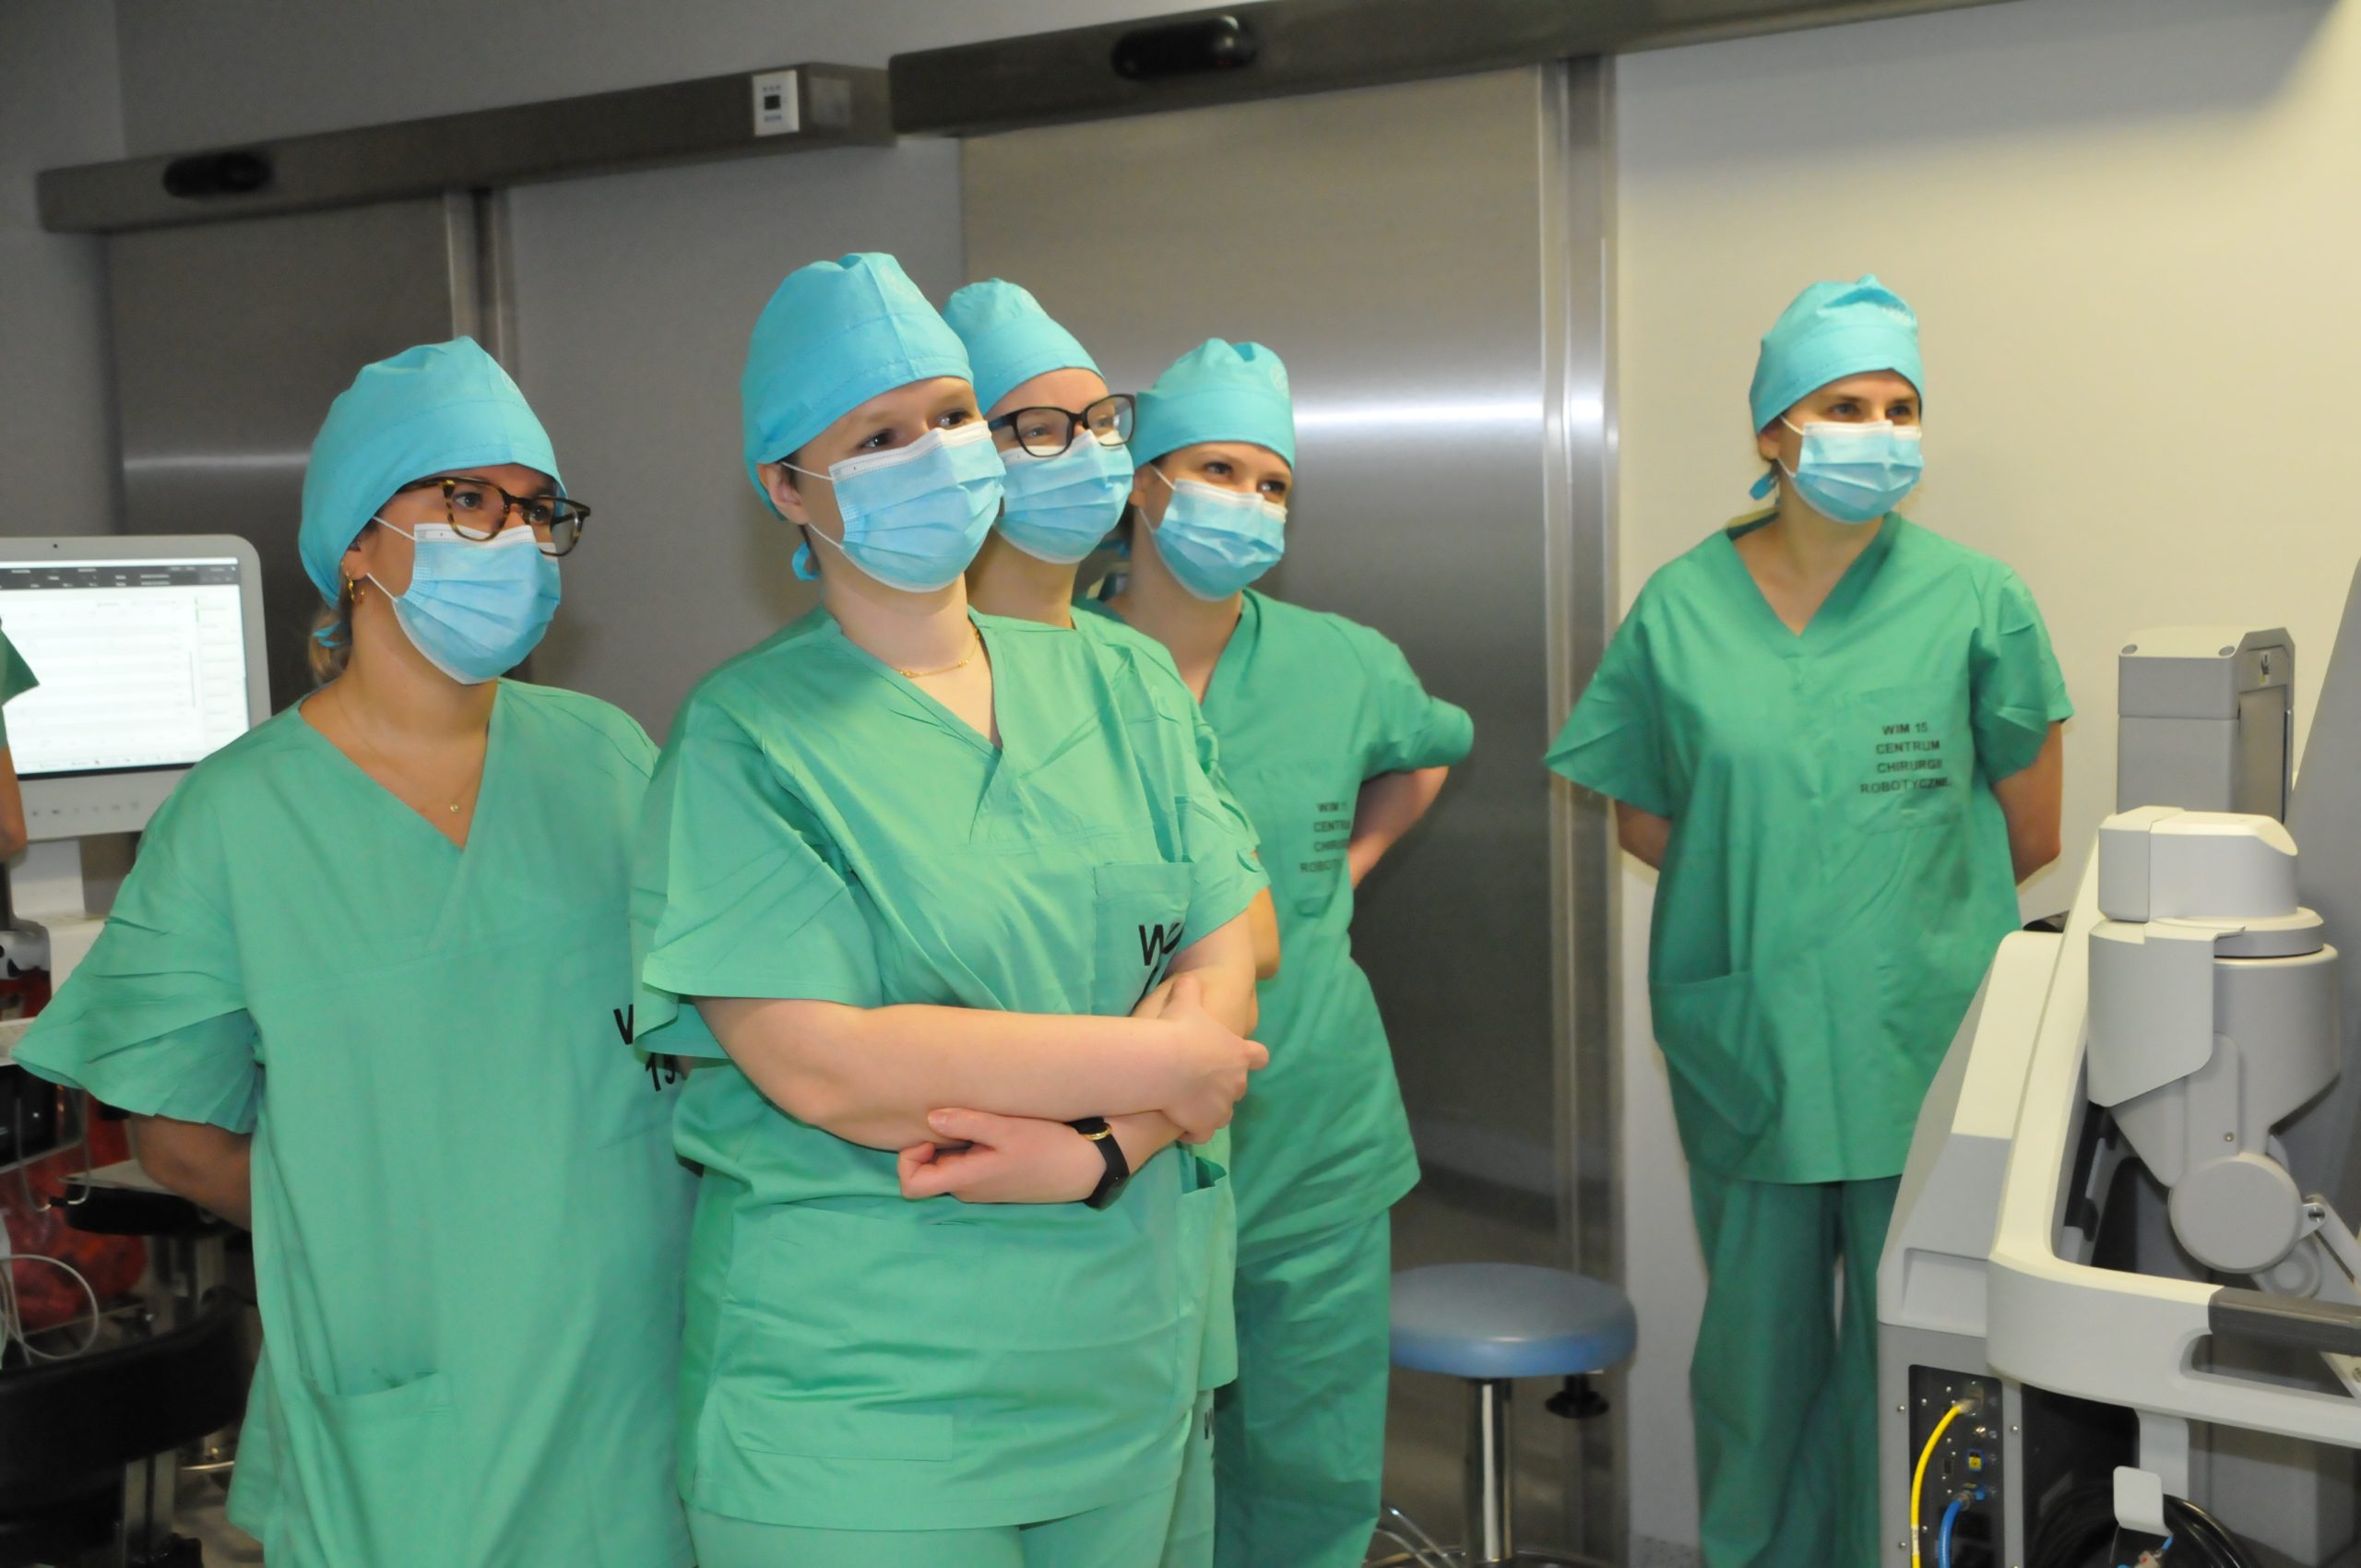 Centrum Szkoleniowe Chirurgii Robotycznej Wojskowego Instytutu Medycznego rozpoczęło kursy szkoleniowe robotem da vinci